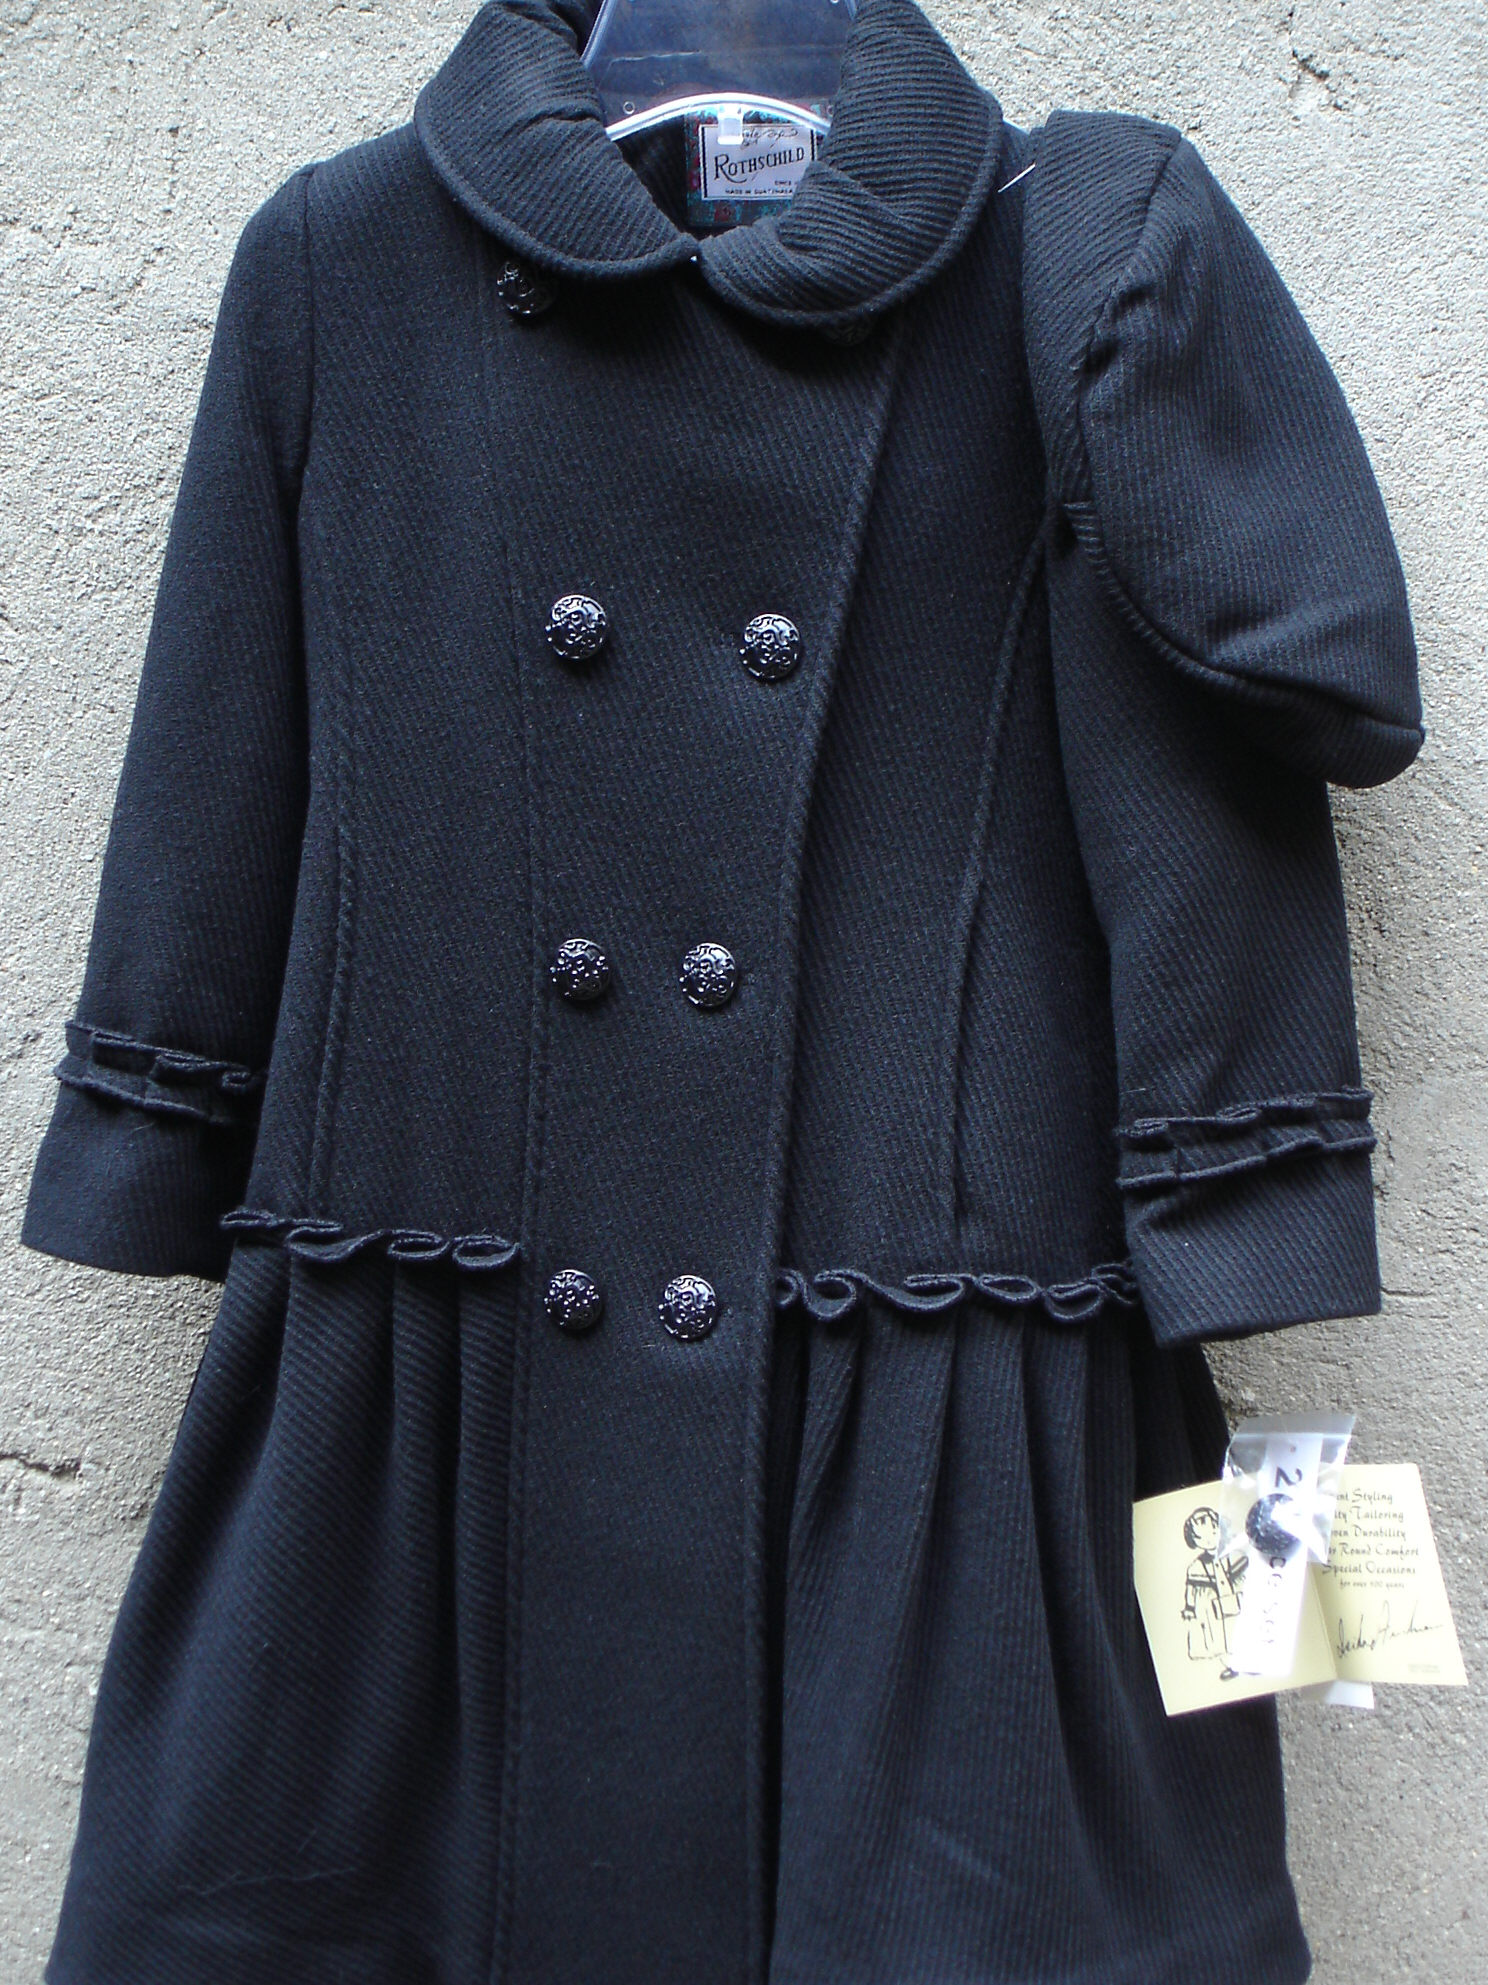 rothschild coats for girls